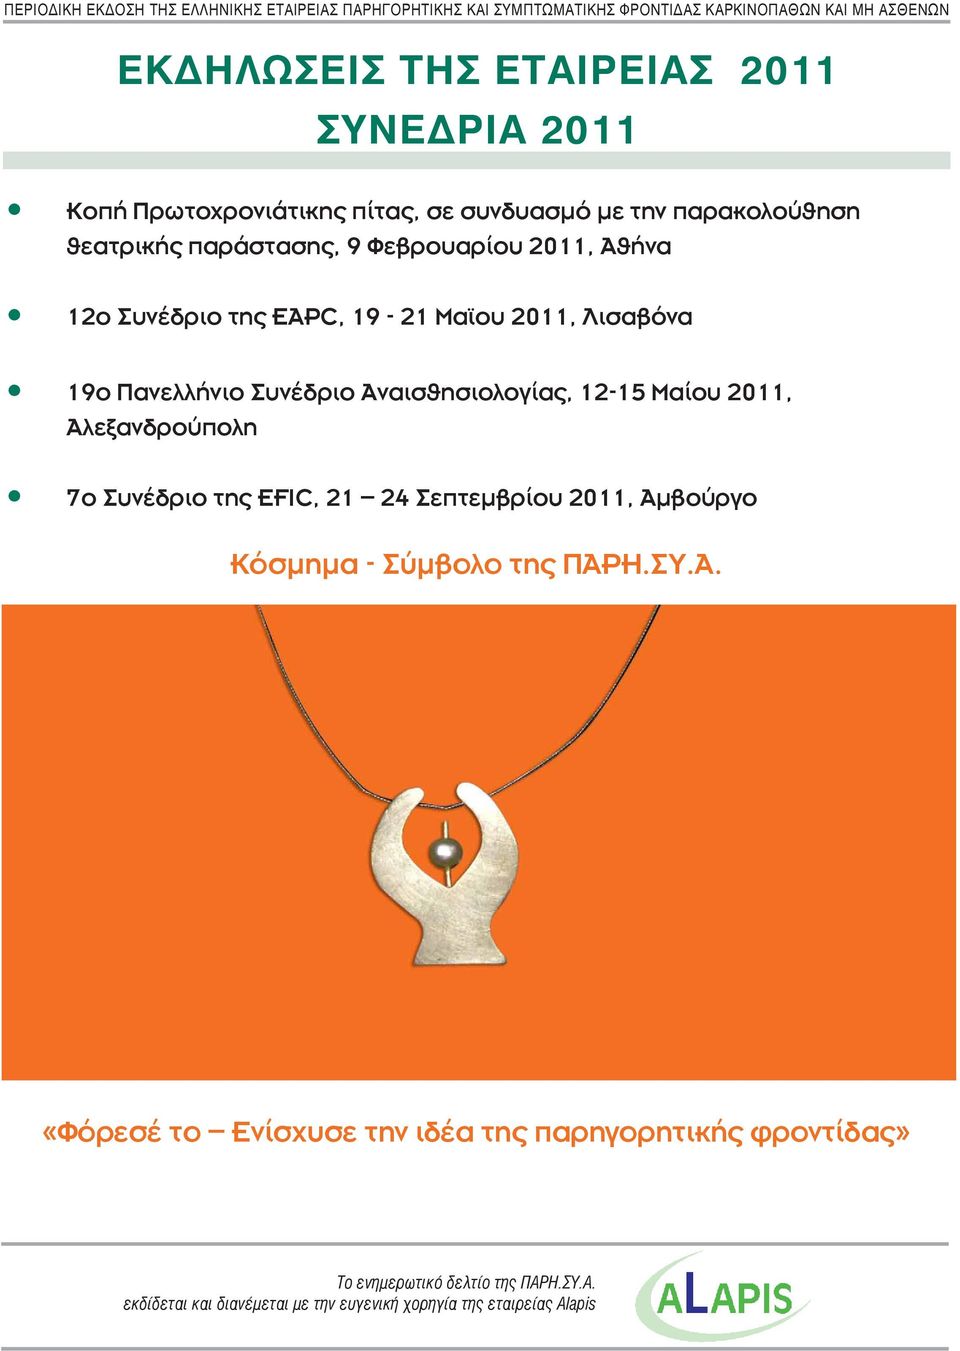 Πανελλήνιο Συνέδριο Αναισθησιολογίας, 12-15 Μαίου 2011, Αλεξανδρούπολη 7ο Συνέδριο της EFIC, 21 24 Σεπτεμβρίου 2011, Αμβούργο Κόσμημα - Σύμβολο της ΠΑΡΗ.ΣΥ.Α. «Φόρεσέ το Ενίσχυσε την ιδέα της παρηγορητικής φροντίδας» Το ενημερωτικό δελτίο της ΠΑΡΗ.